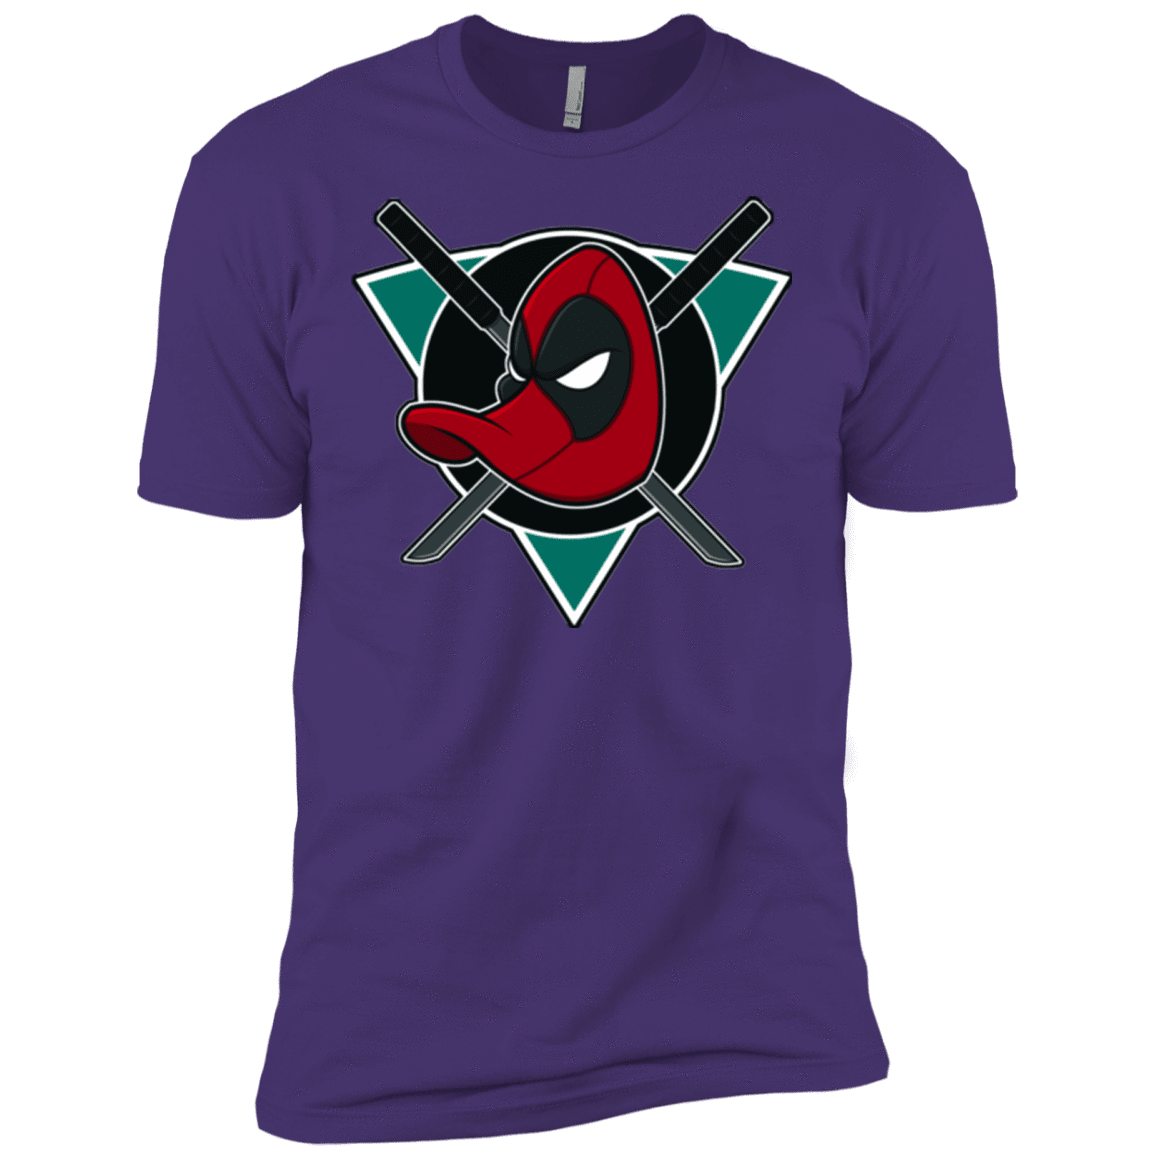 T-Shirts Purple / X-Small Dead Ducks Men's Premium T-Shirt